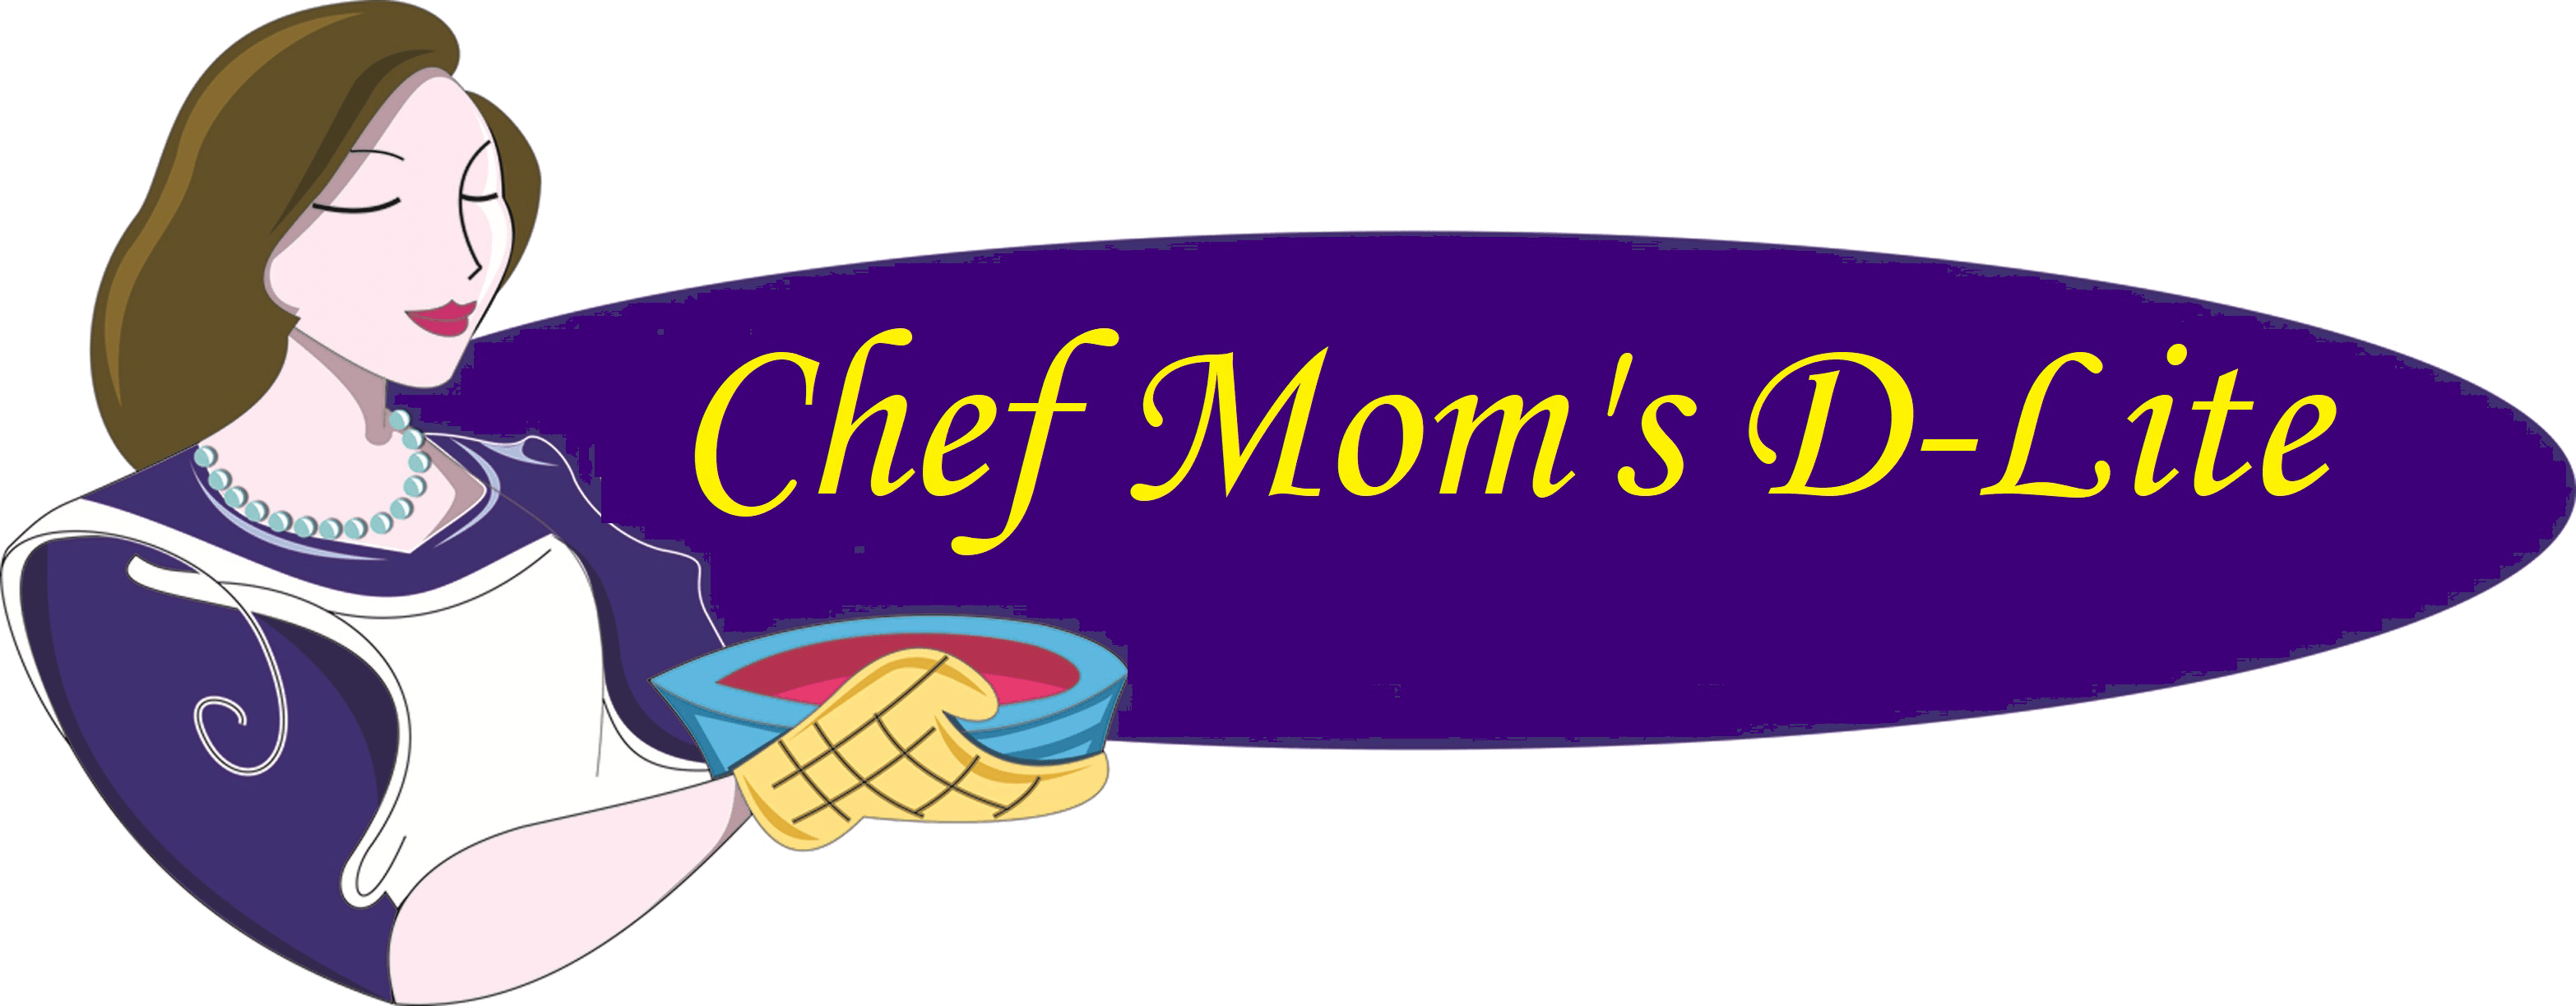 D-Lite Logo - Chef Mom's D-Lite | Home